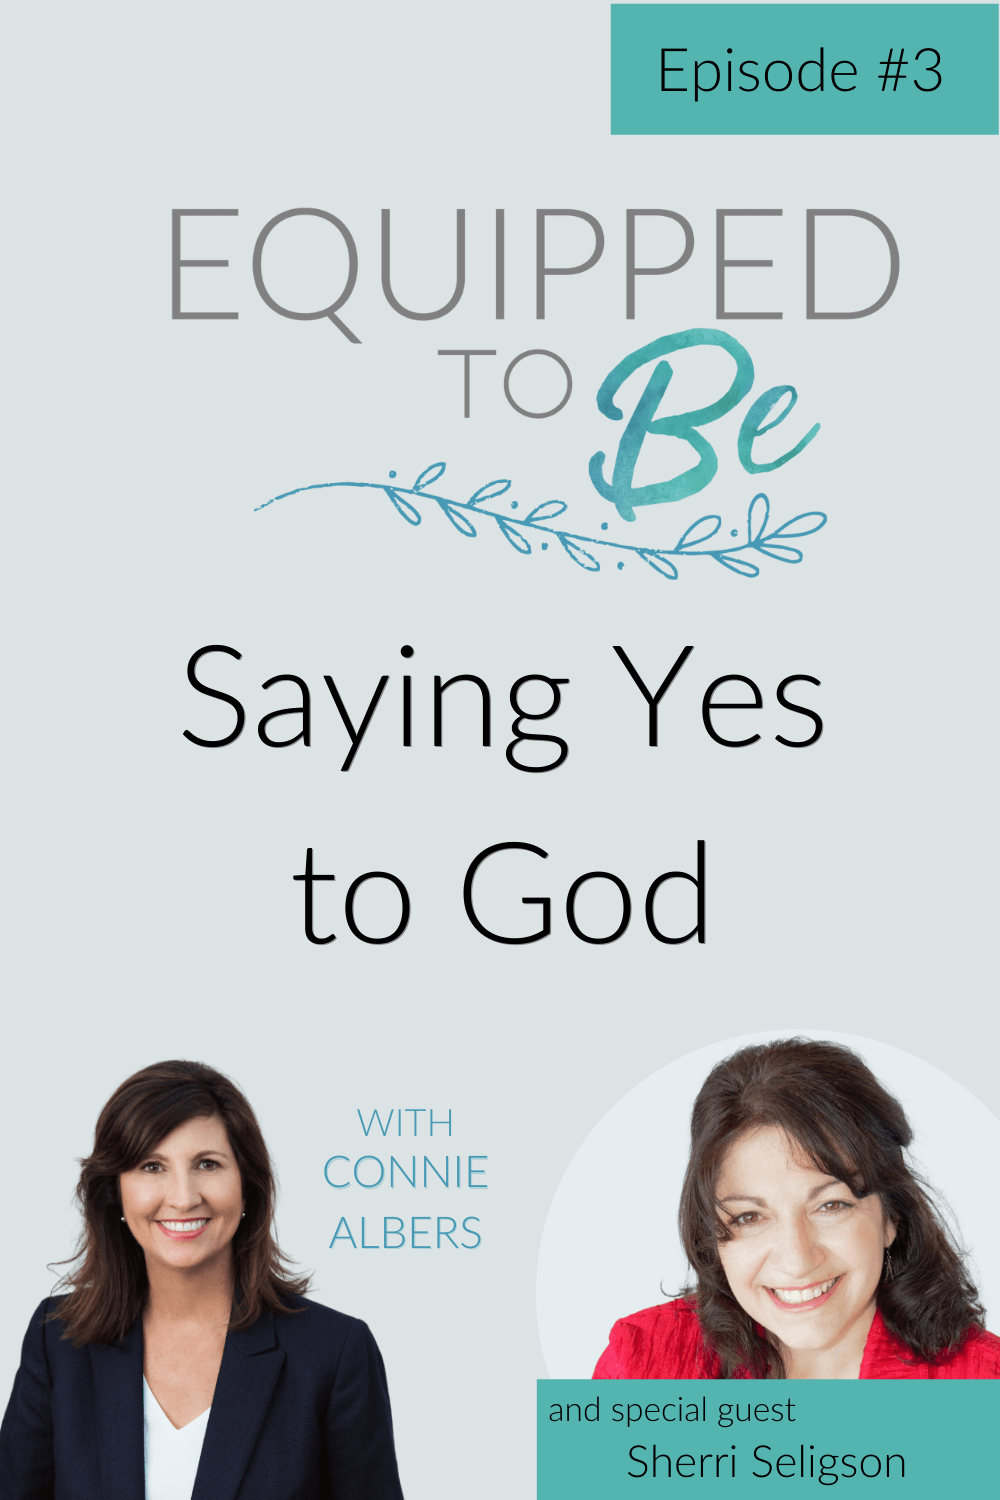 Saying Yes to God with Sherri Seligson - ETB #3